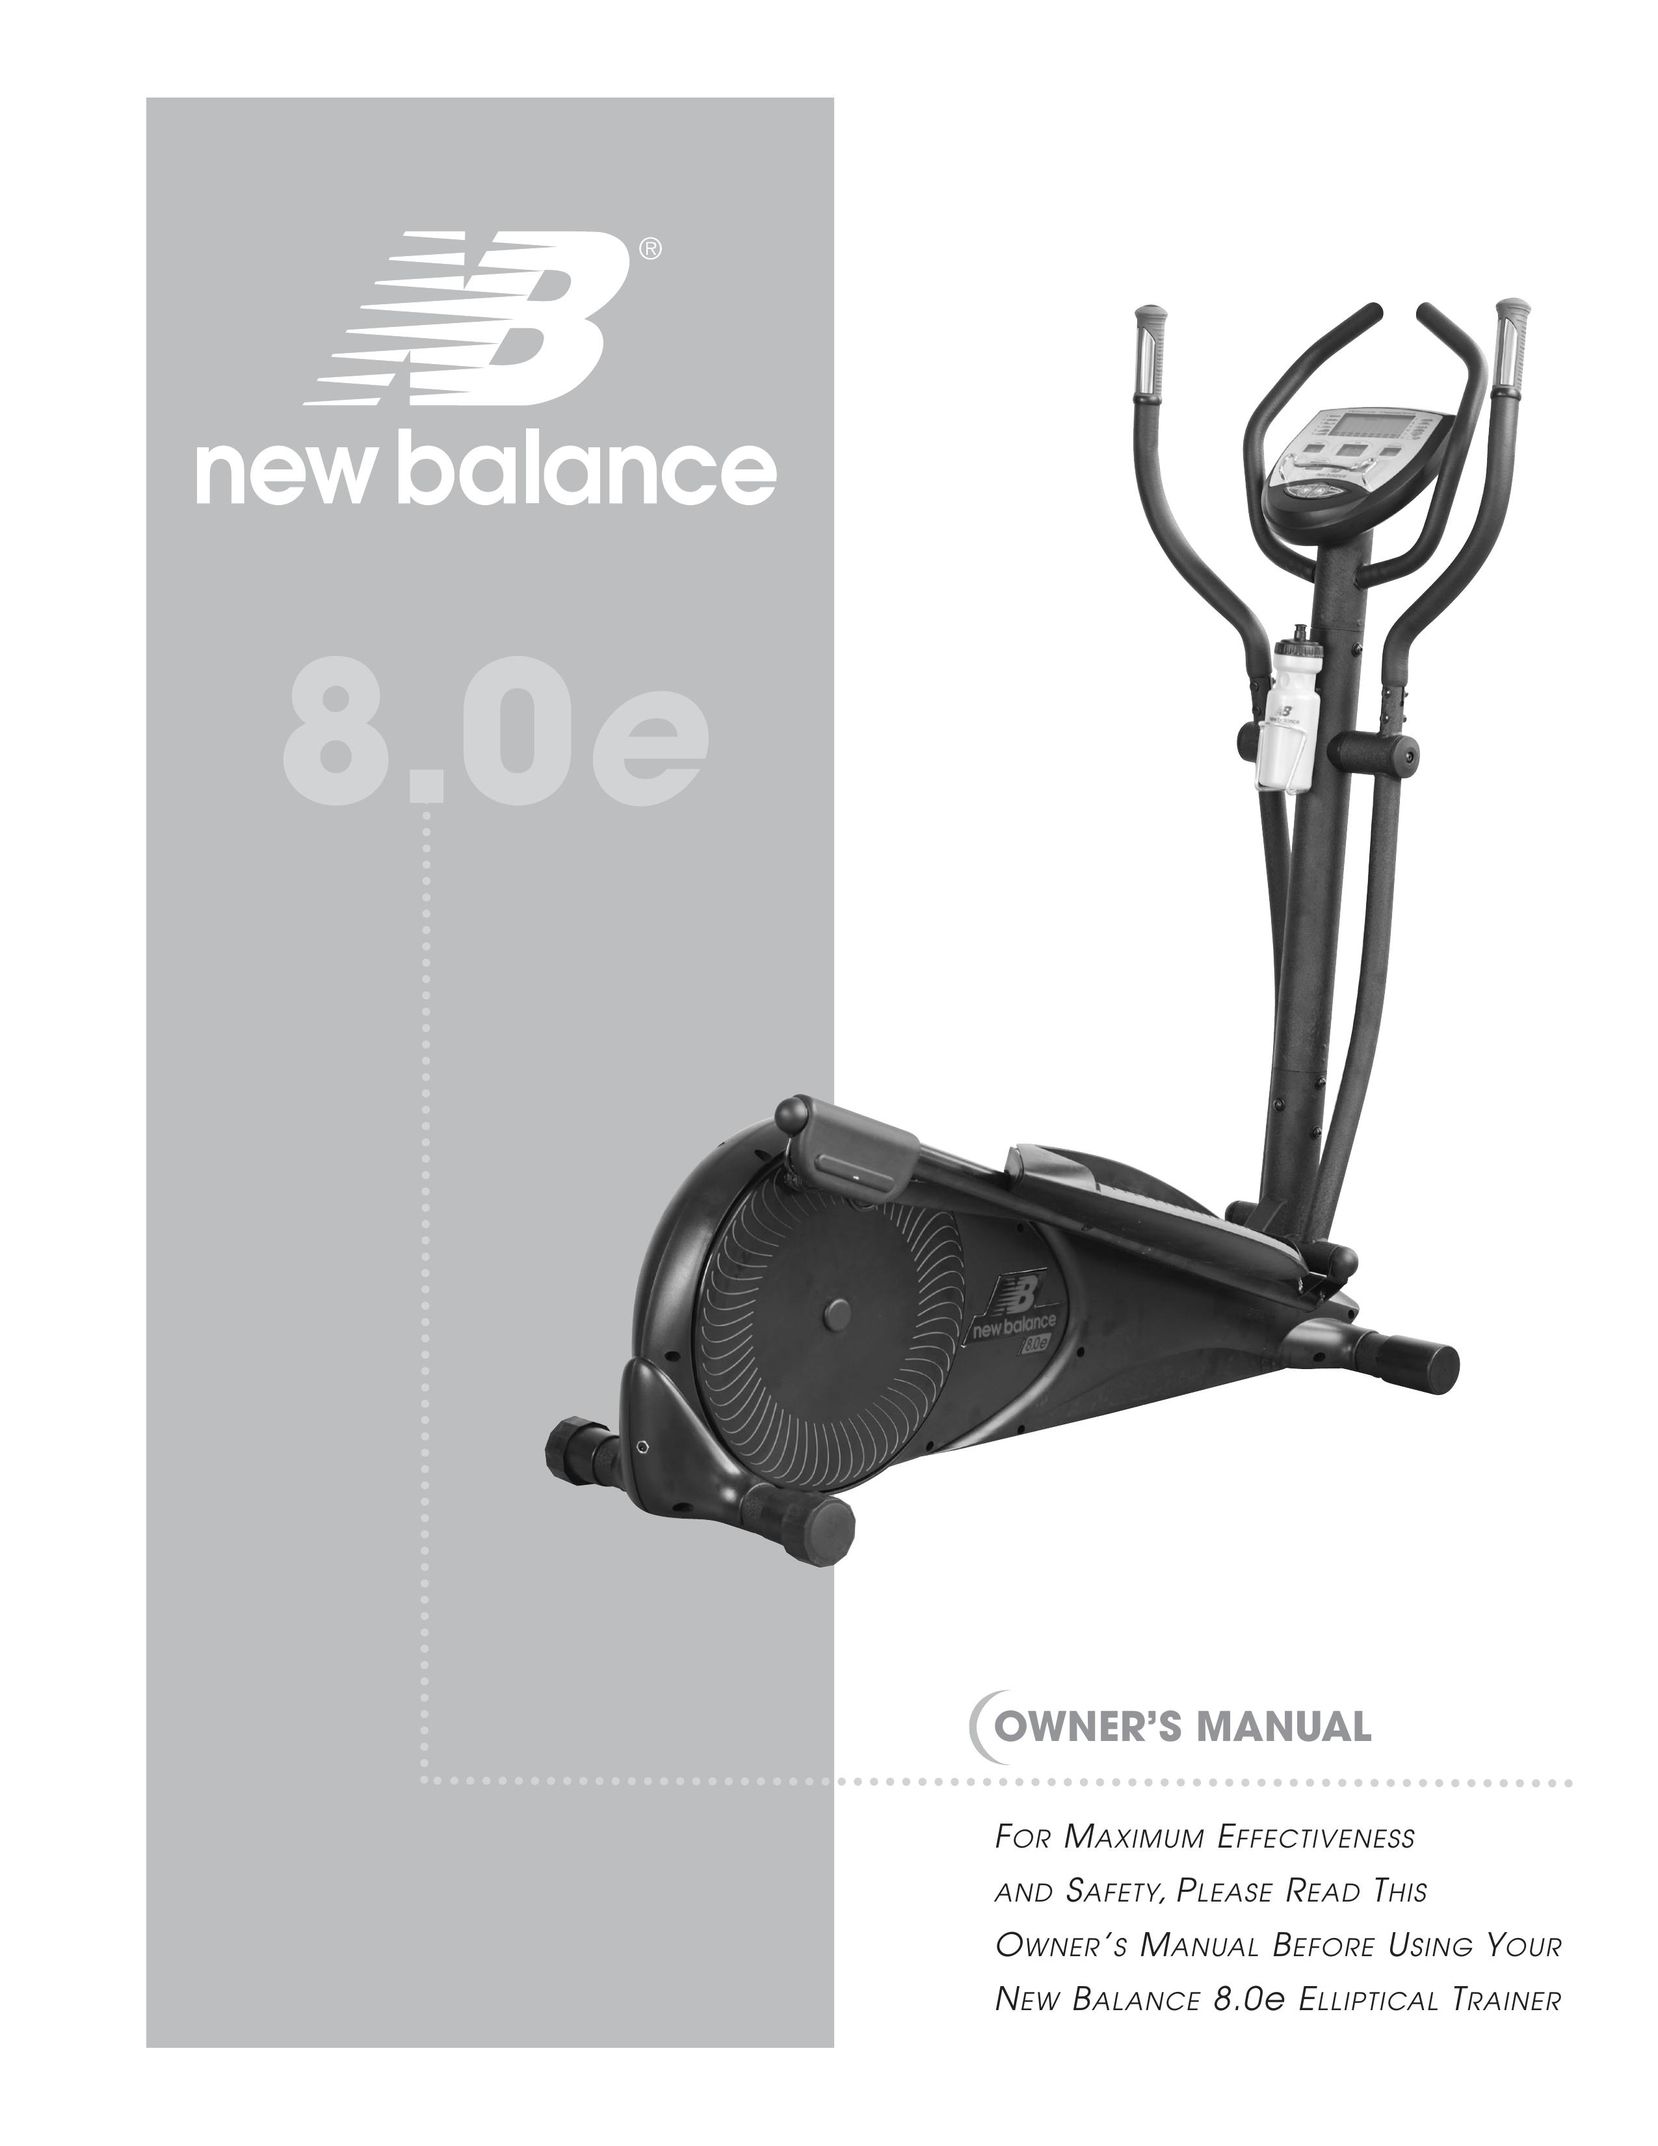 New Balance 8.0e Home Gym User Manual